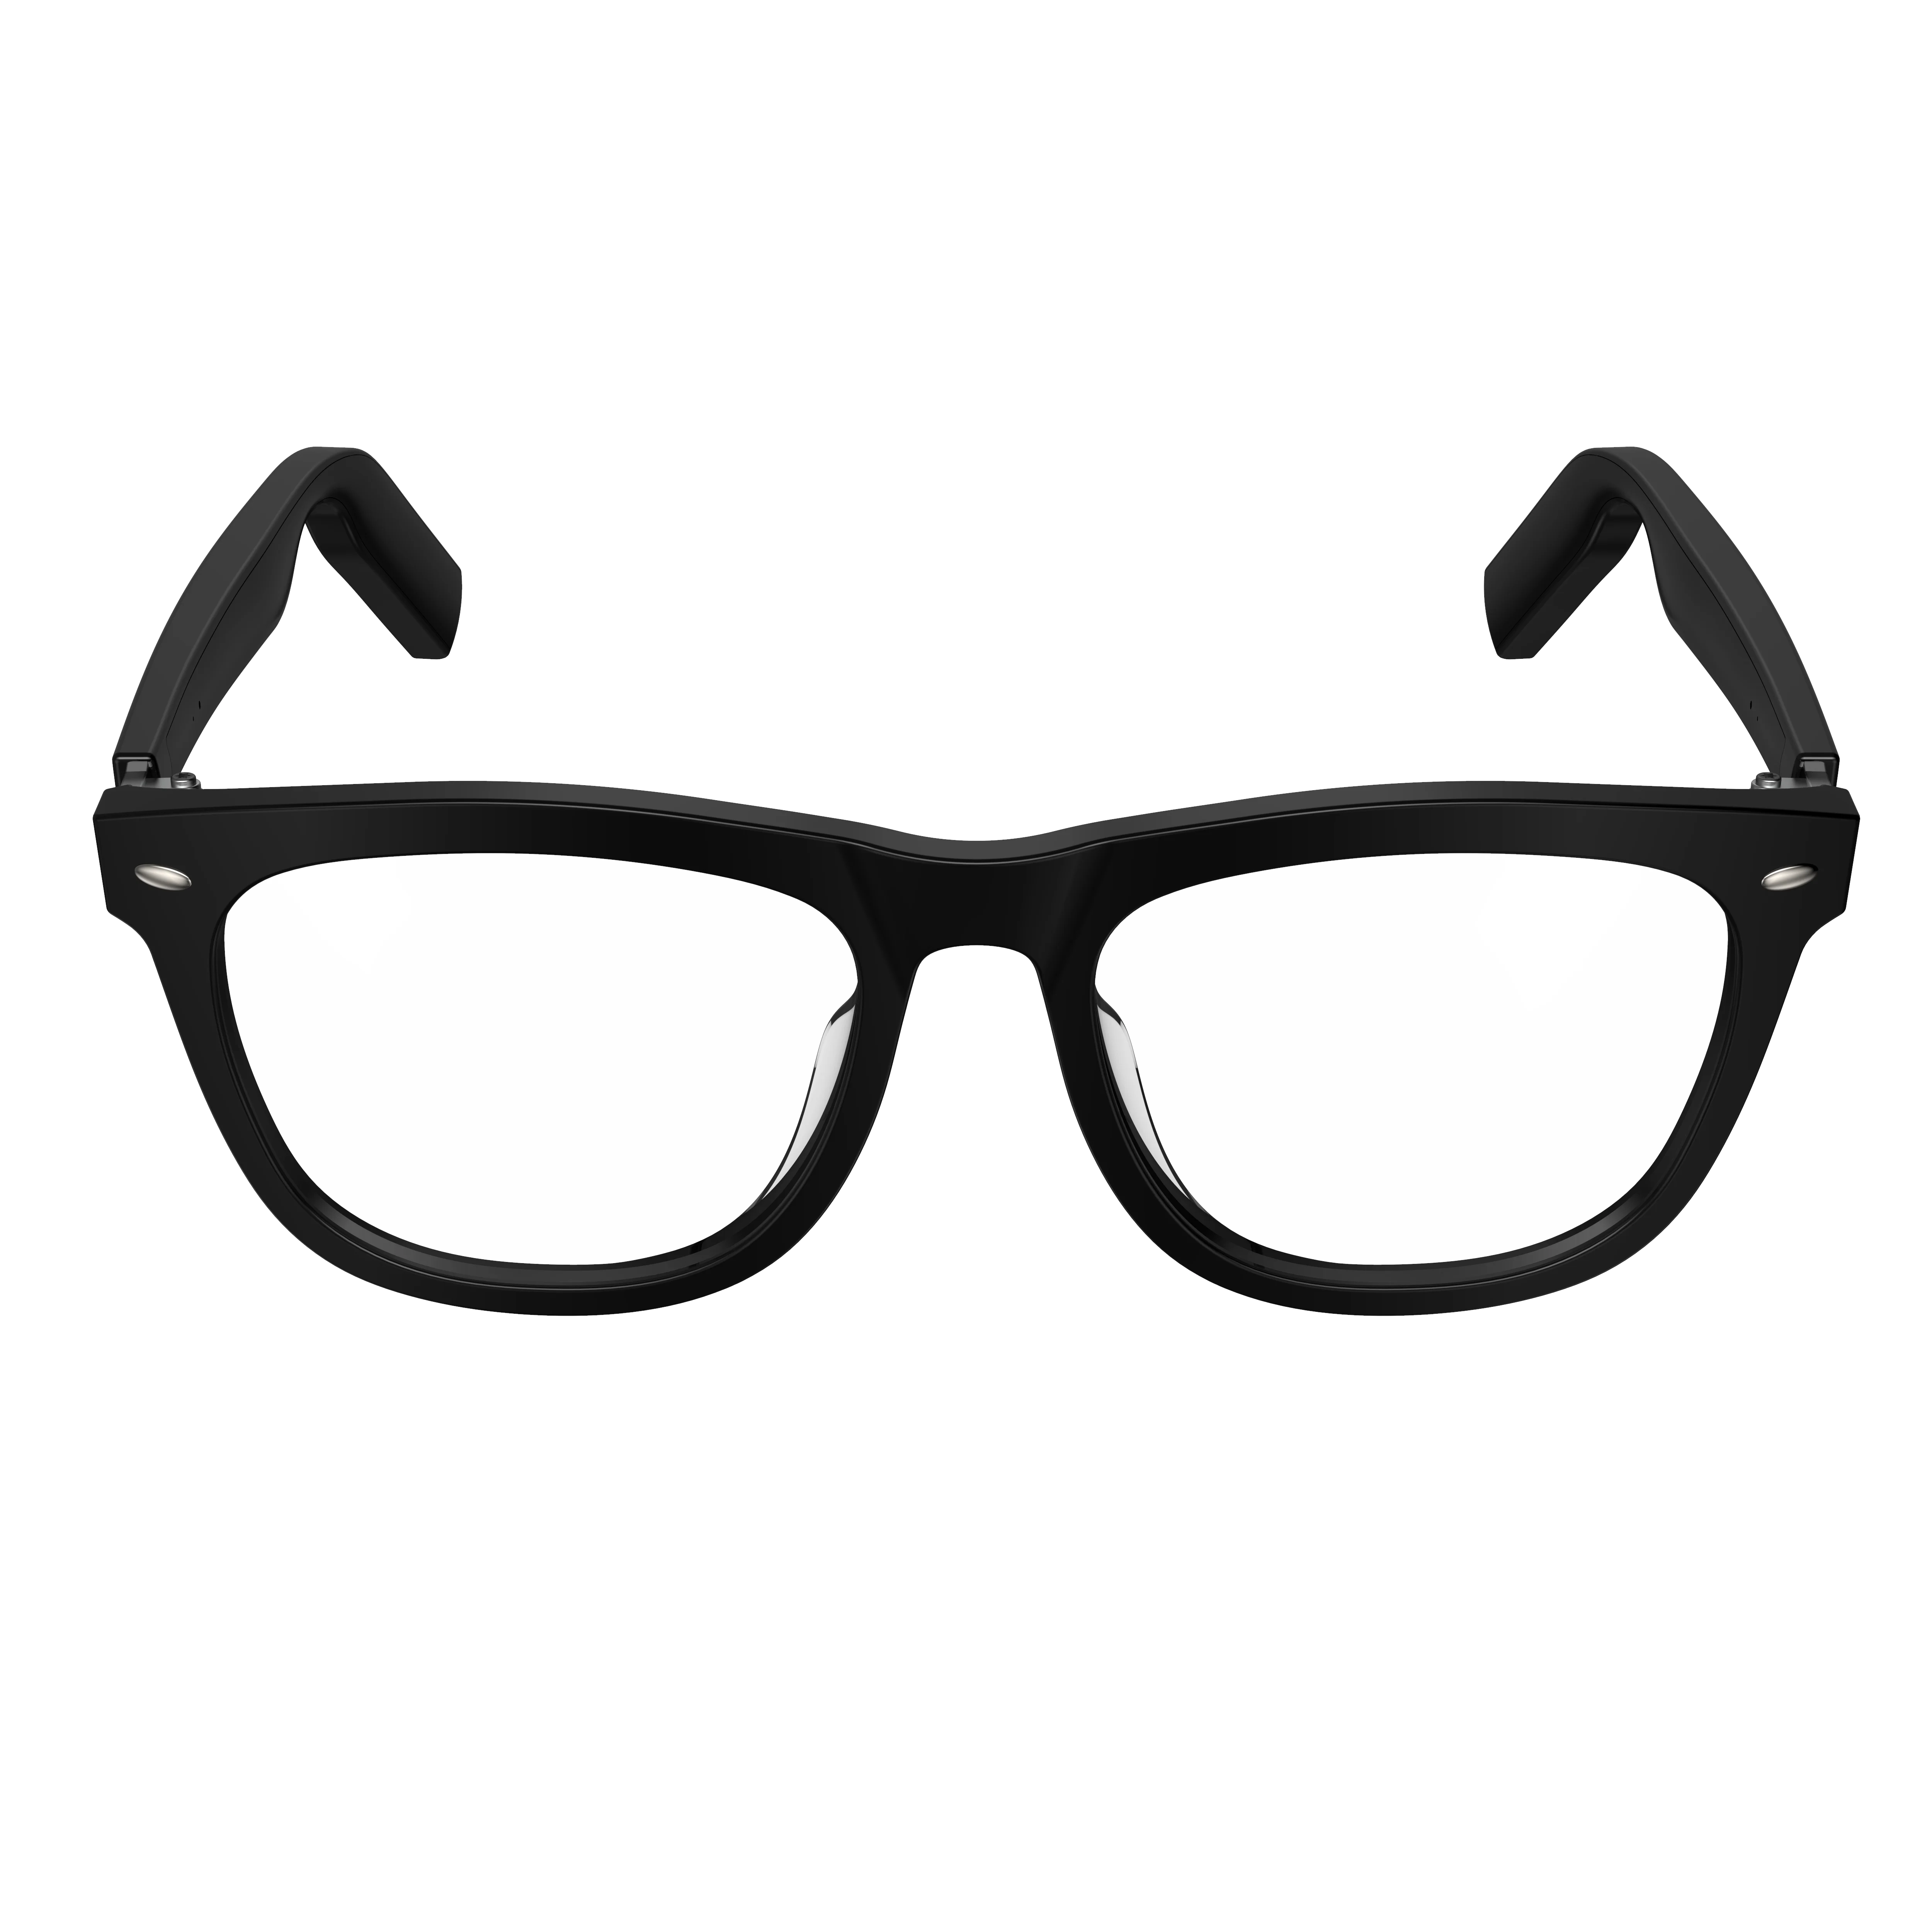 구매 블루투스 스마트 안경 음악 음성 통화 선글라스와 일치 가능, 처방 렌즈 호환 IOS 안드로이드 전화 헤드폰